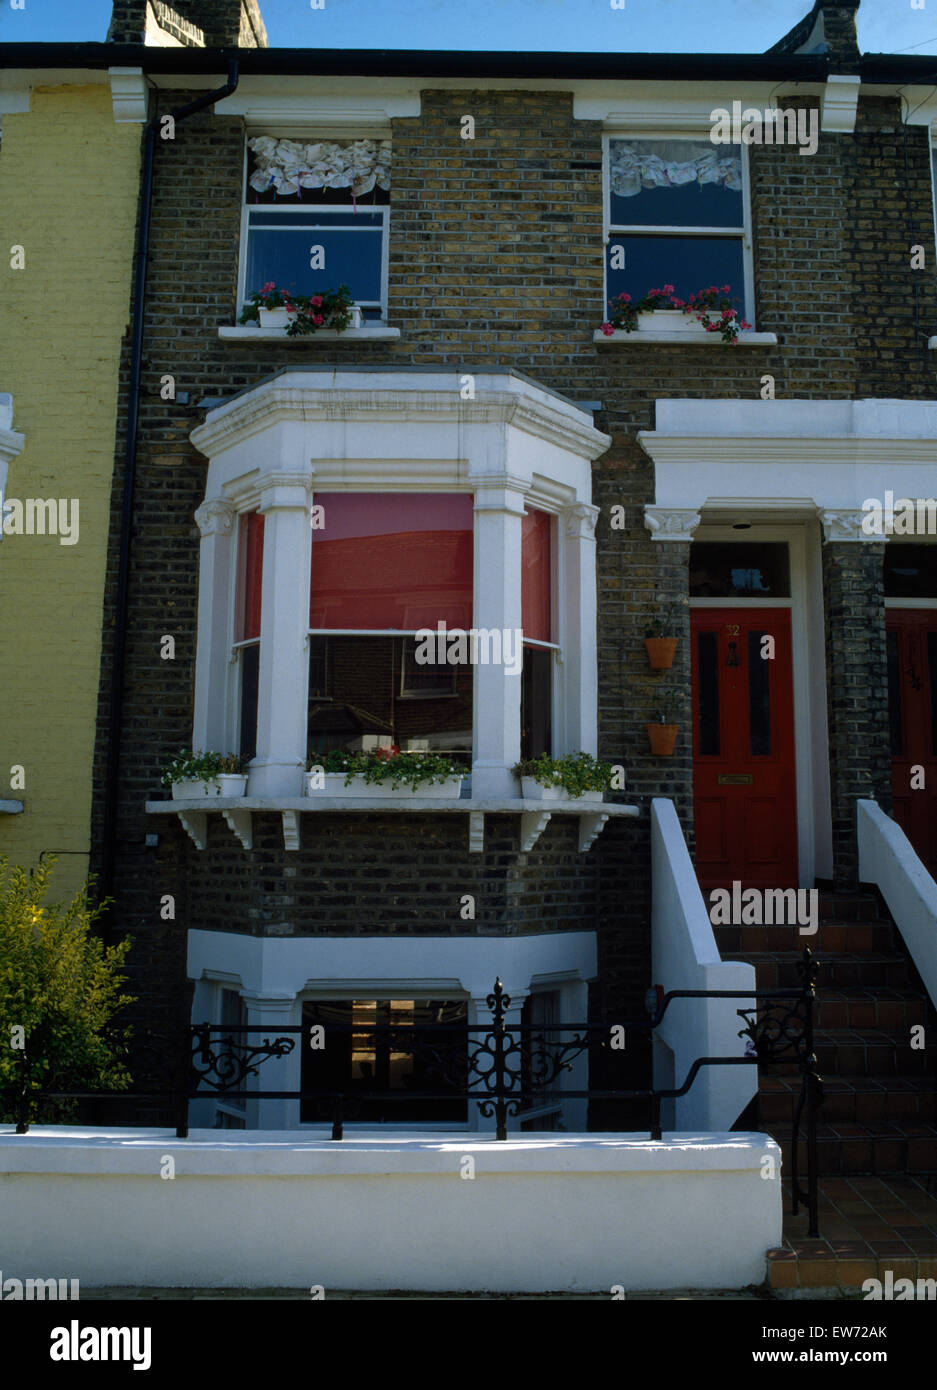 Extérieur de maison victorienne avec terrasse avec baie vitrée derrière aveugle rouge Banque D'Images